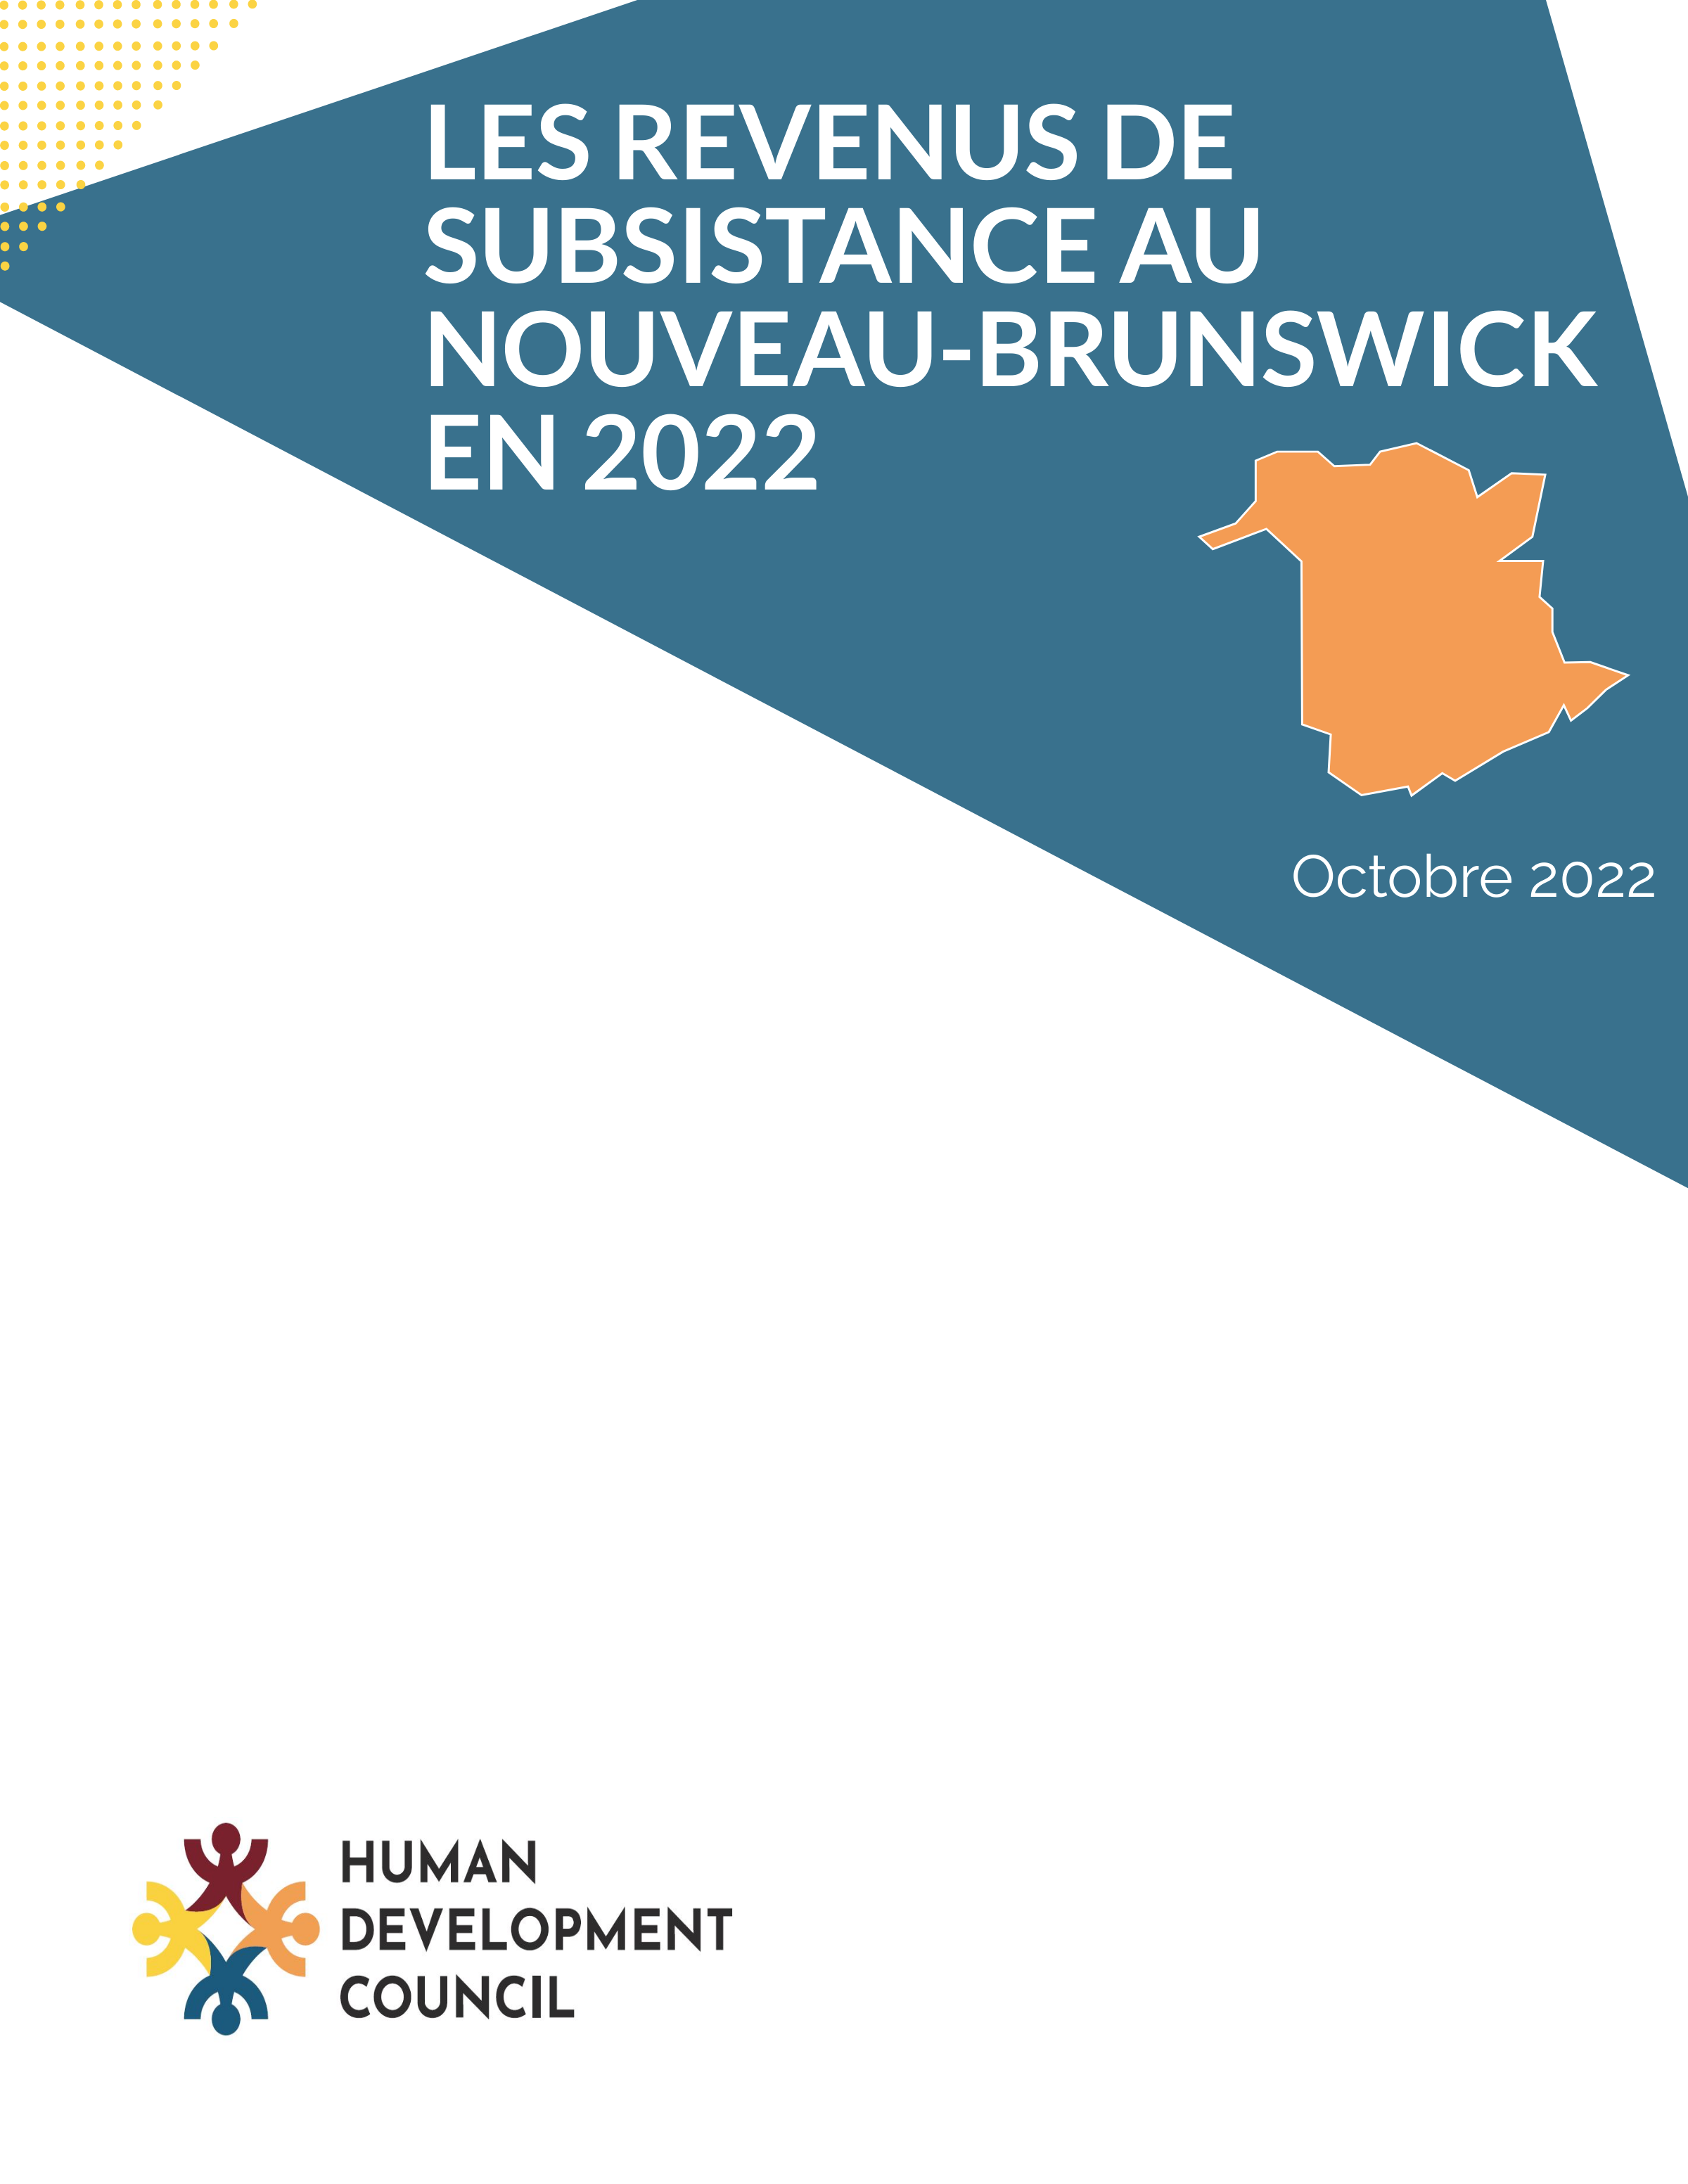 Les revenus de subsistance au Nouveau-Brunswick en 2022